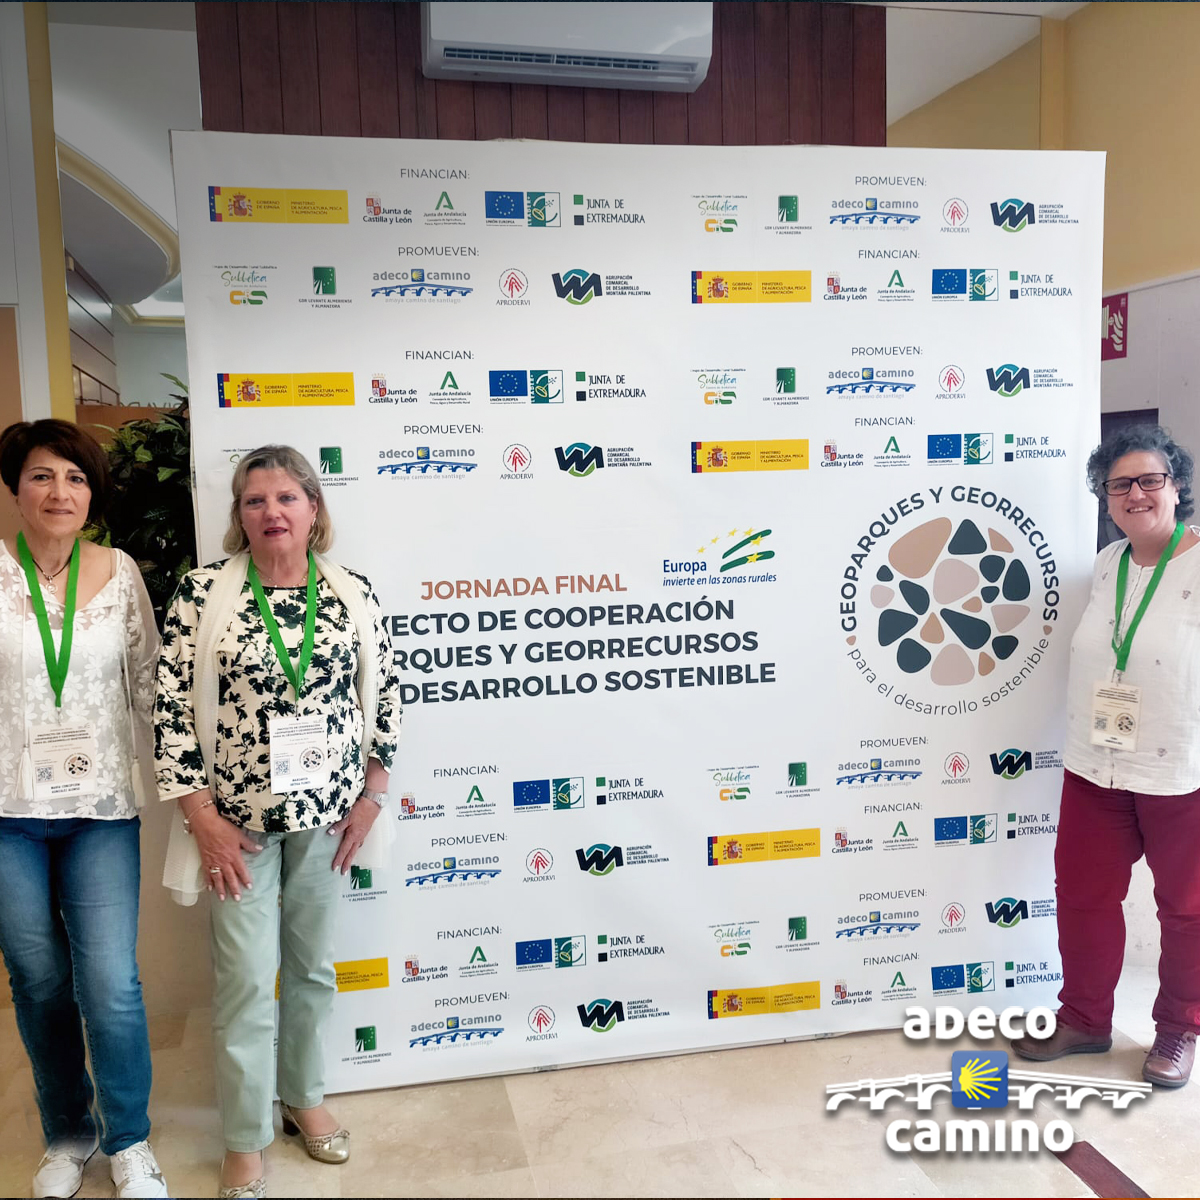 Recientemente han tenido lugar unas jornadas del proyecto de colaboración de Geoparques, en Cabra, Córdoba, participando Adeco Camino y la Montaña Palentina en representación del @geoloras con asistencia a nivel nacional de parques de Andalucía, Extremadura y Castilla y León